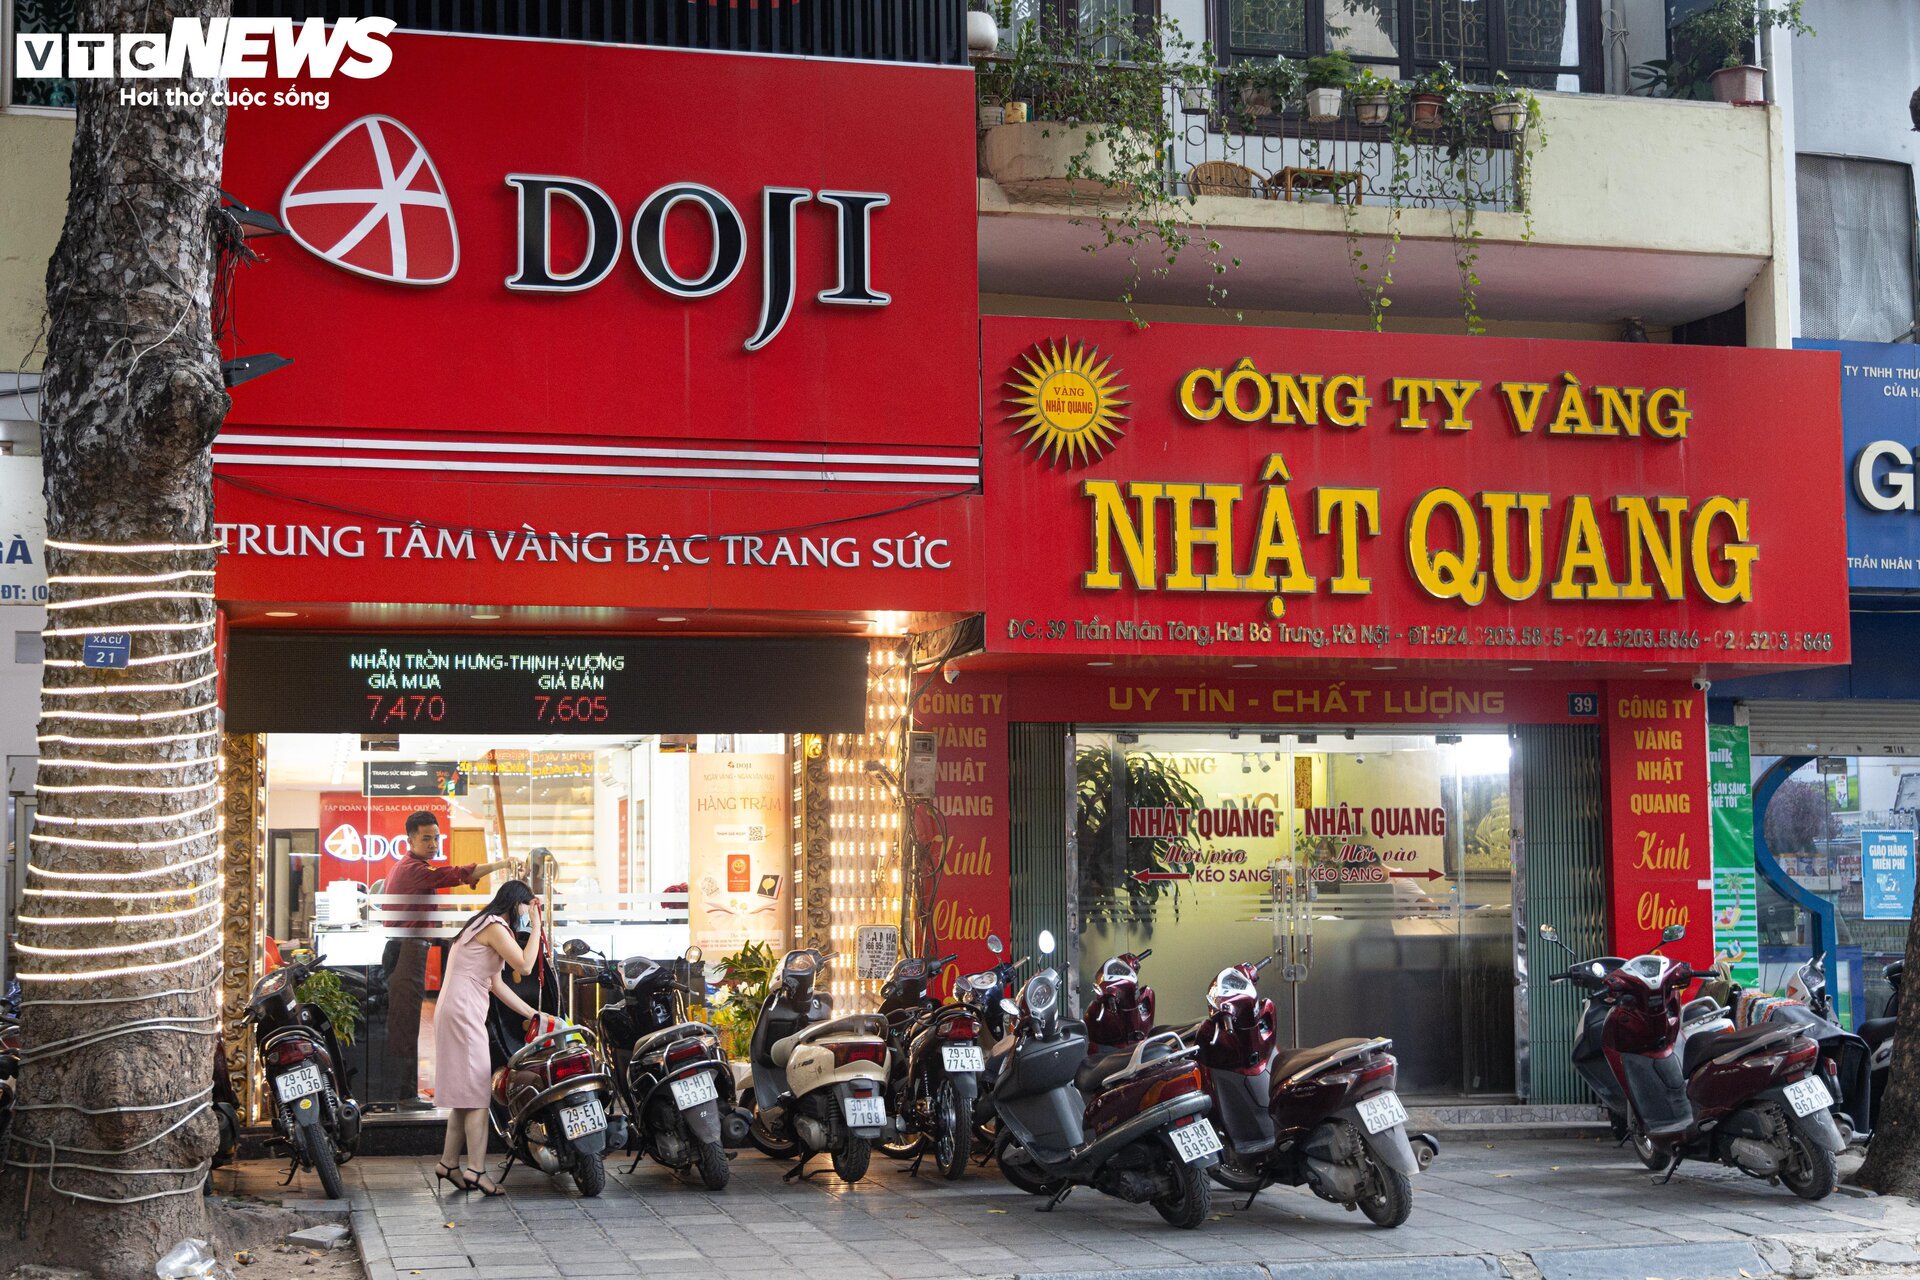 Giá vàng biến động mạnh, cửa hàng ở Hà Nội nhiều lúc ngừng bán- Ảnh 7.